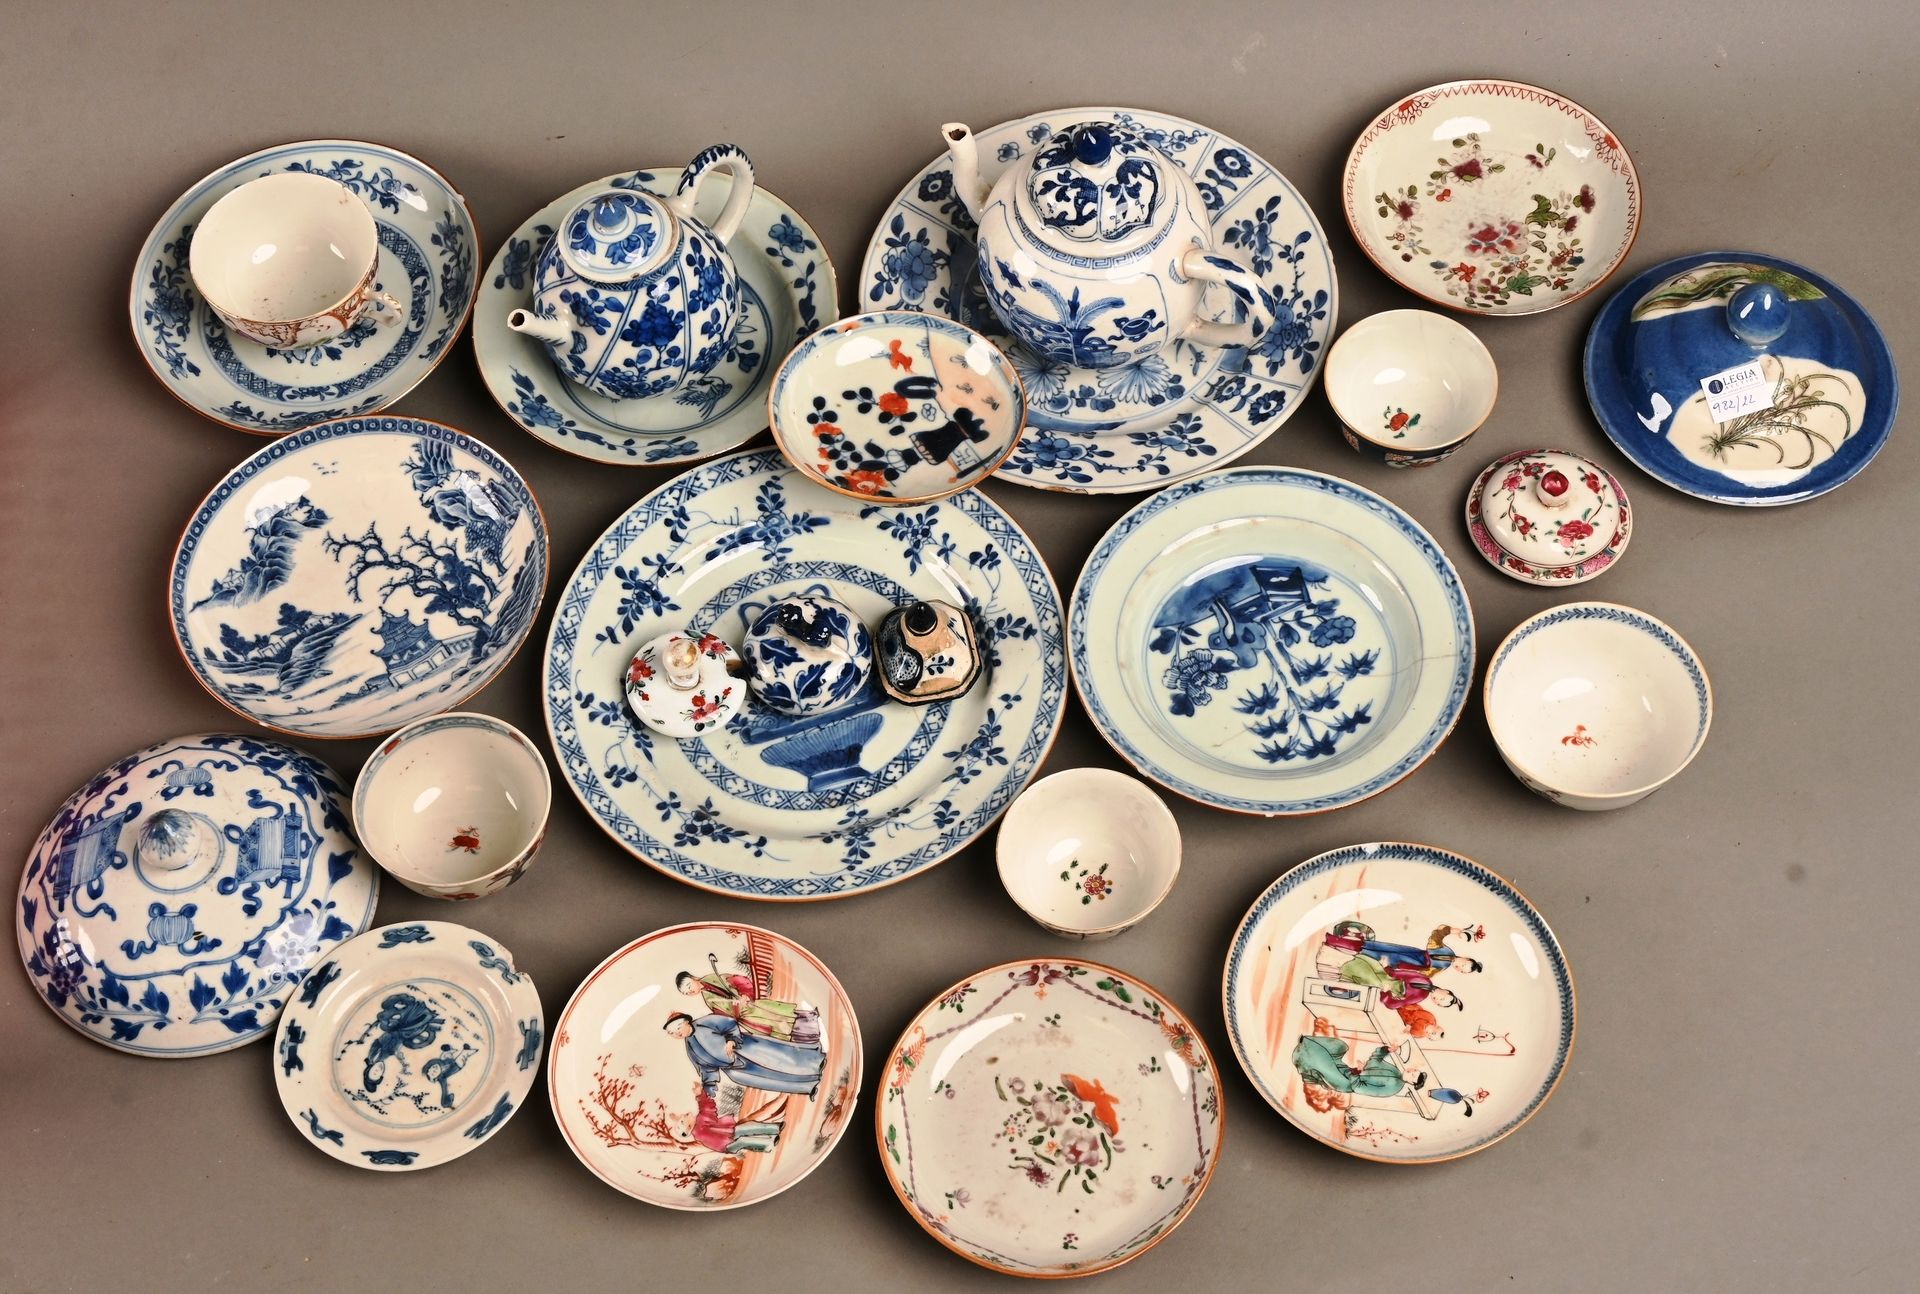 Fond de collection composé de porcelaine CHINA.
Colección de porcelana china, pl&hellip;